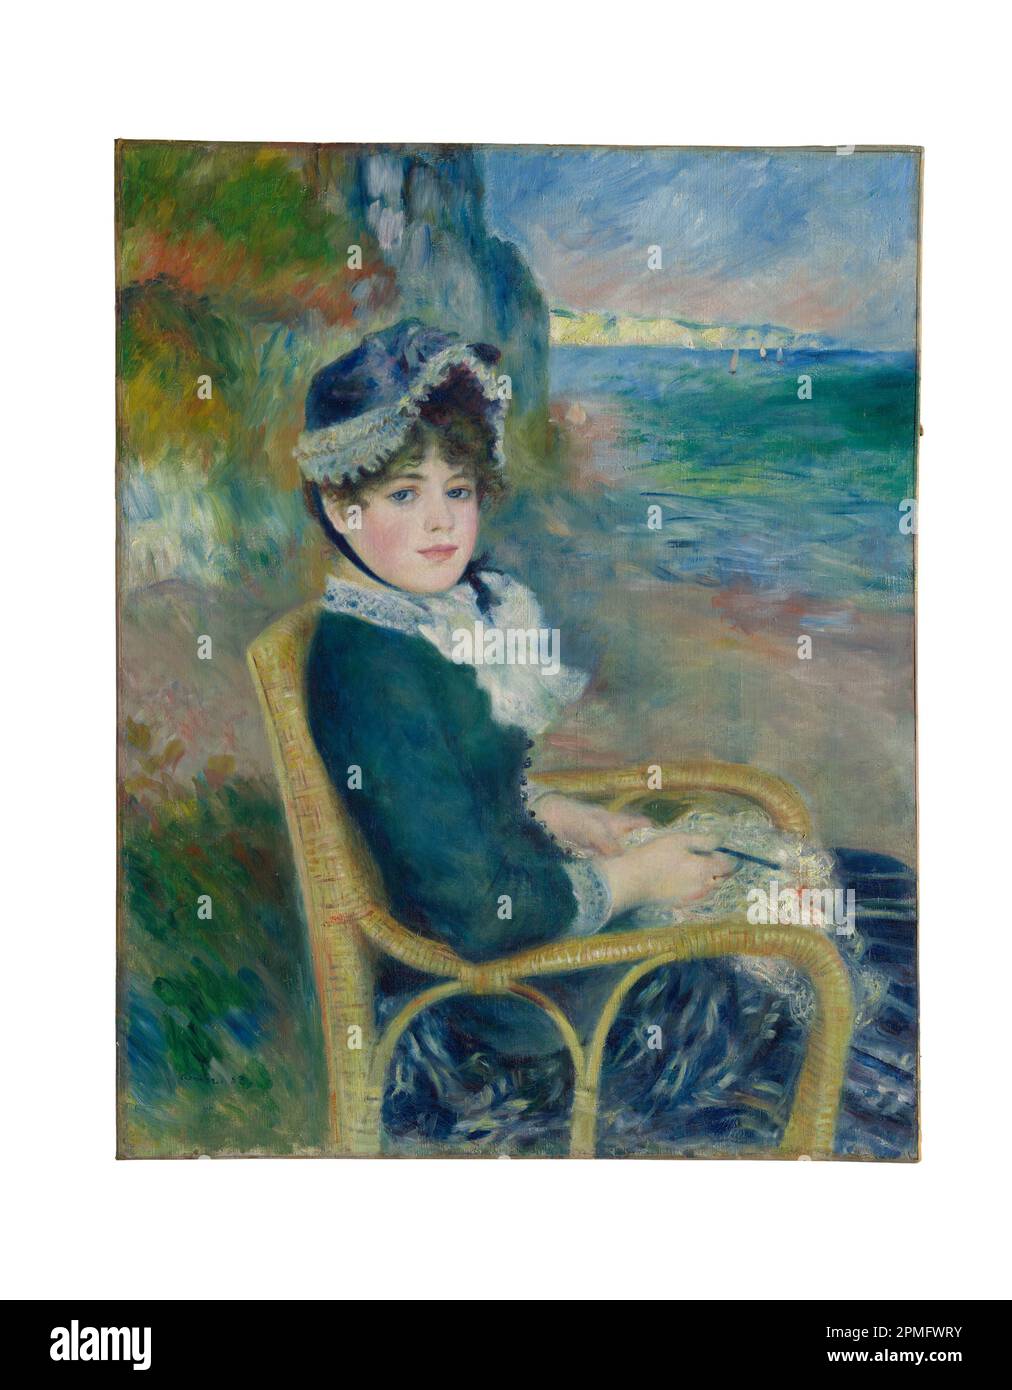 Par le Seashore huile sur toile peinture par Auguste Renoir fait en 1883 Banque D'Images